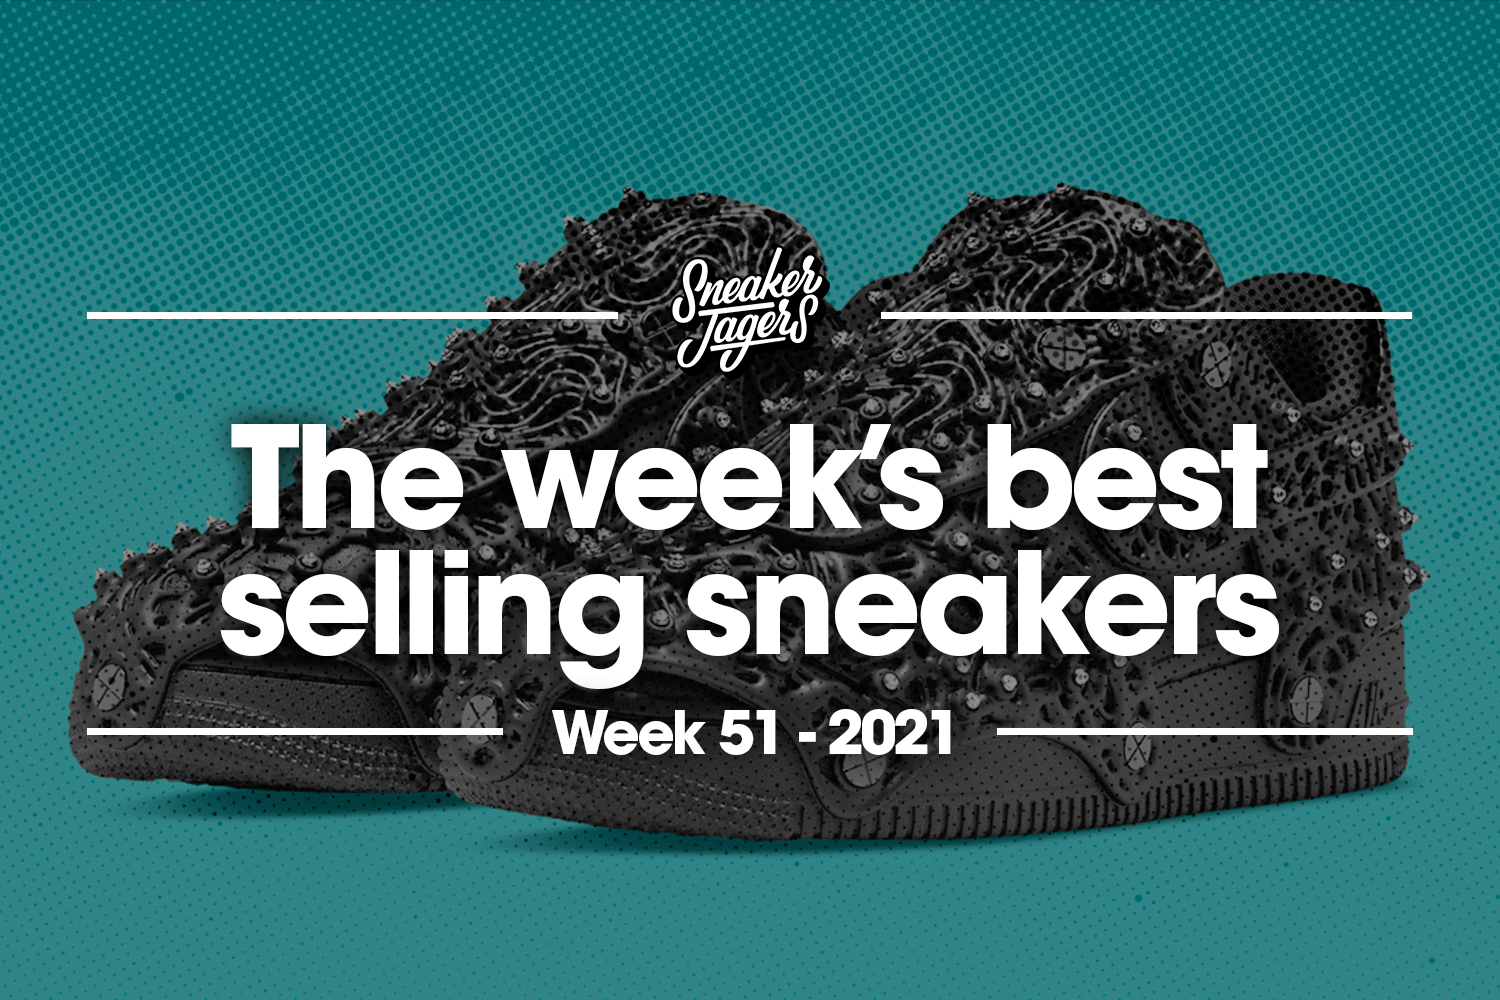 De 5 bestverkochte sneakers van week 51